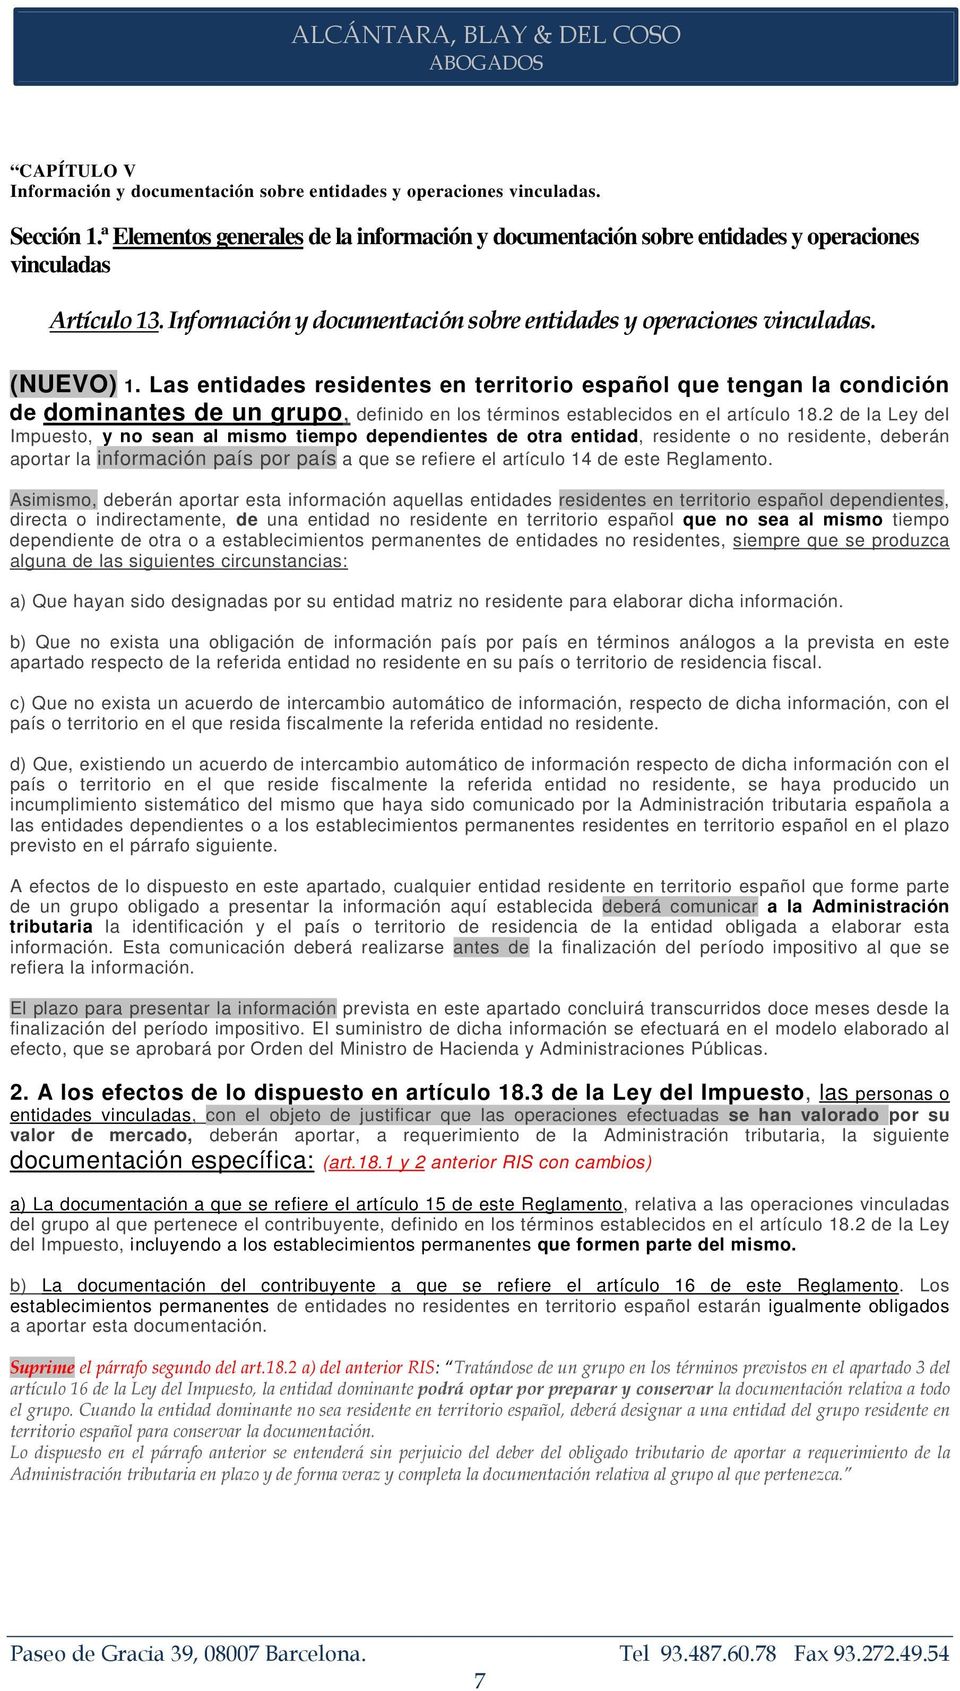 Las entidades residentes en territorio español que tengan la condición de dominantes de un grupo, definido en los términos establecidos en el artículo 18.